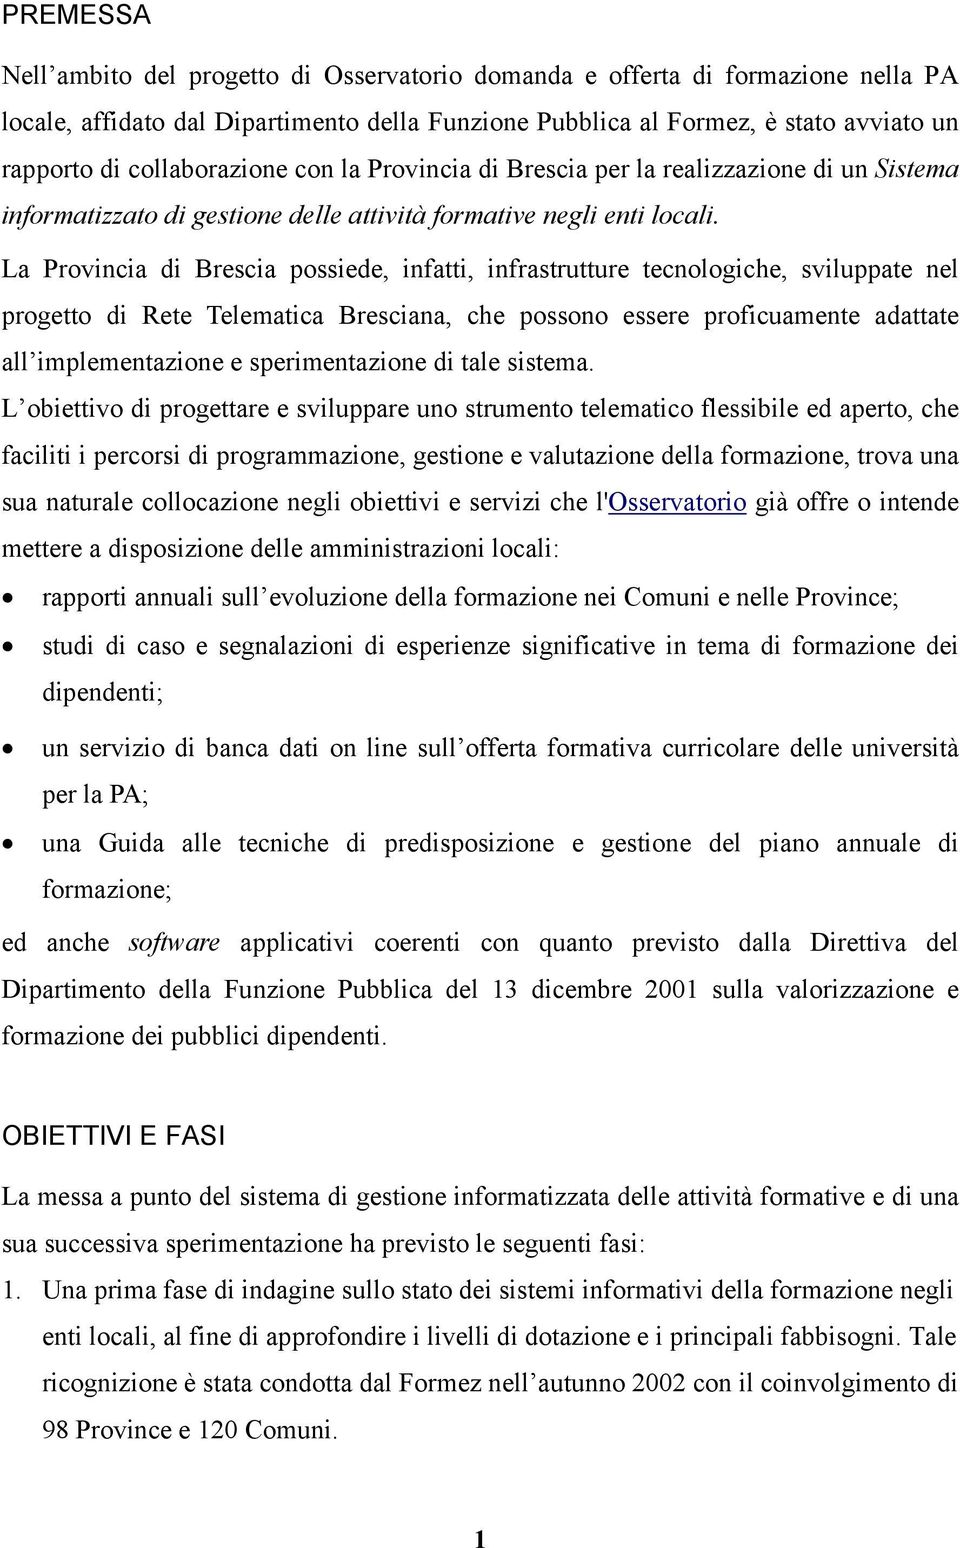 La Provincia di Brescia possiede, infatti, infrastrutture tecnologiche, sviluppate nel progetto di Rete Telematica Bresciana, che possono essere proficuamente adattate all implementazione e